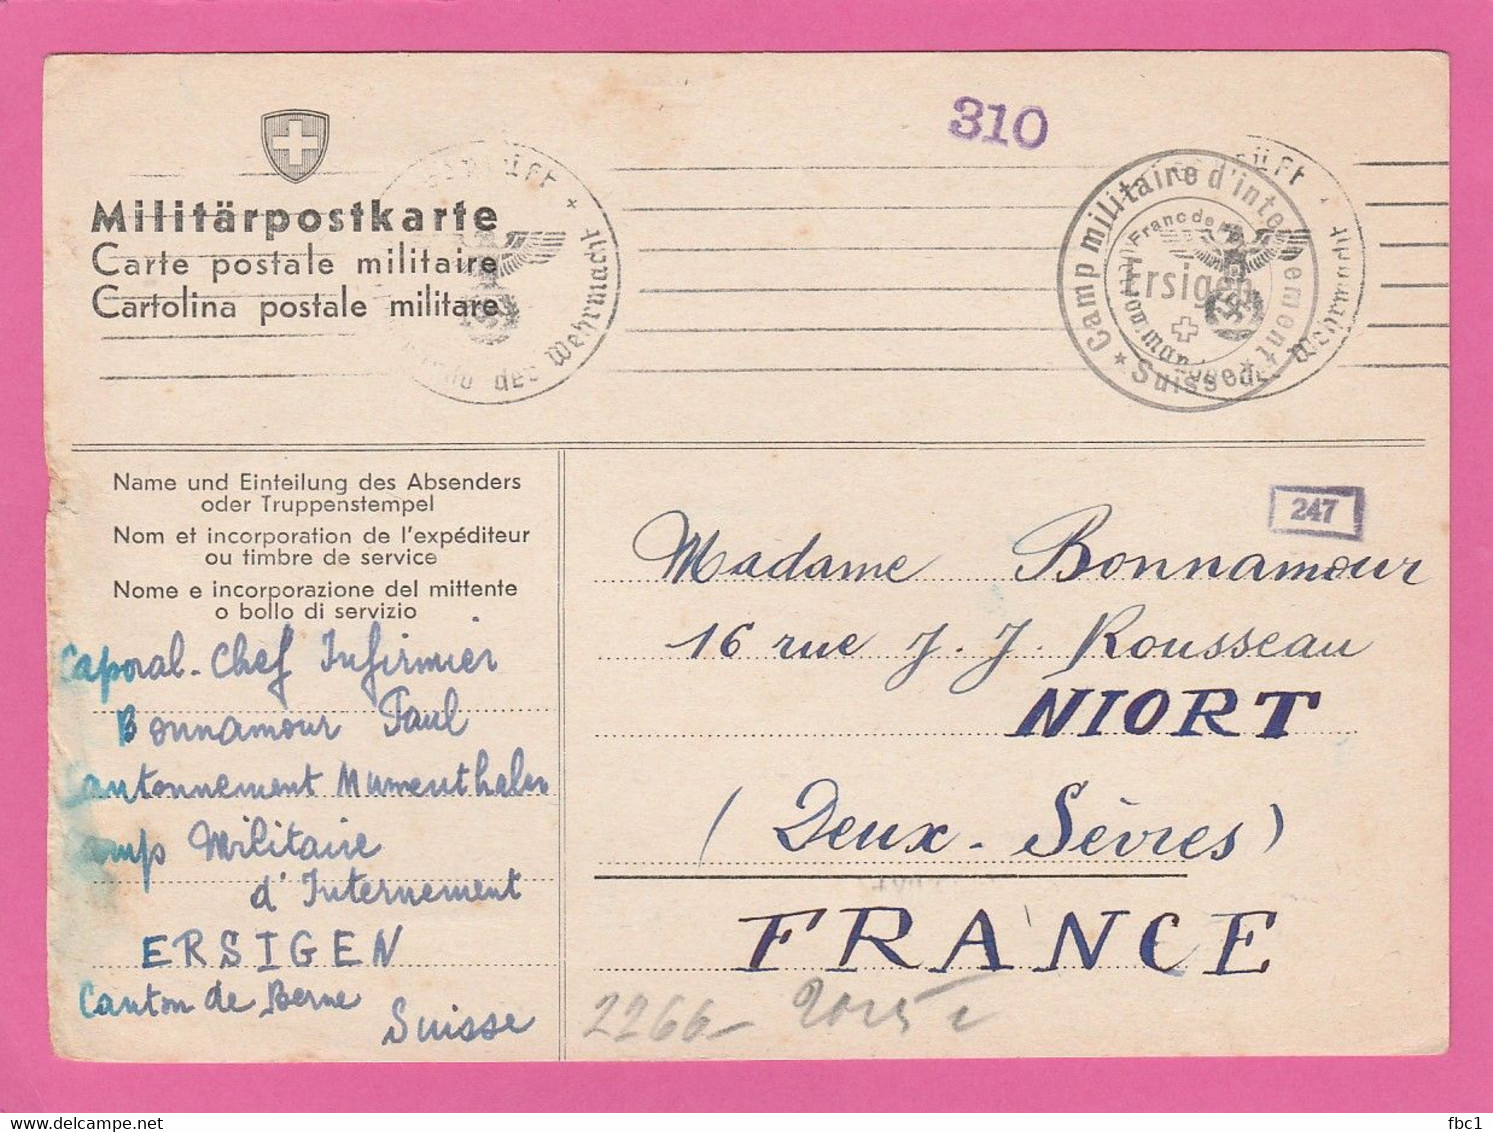 Camp Militaire D'internement D'Ersigen (Suisse) Sur Militärpostkarte Vers Niort 1940 (Paul Bonnamour) - Postmarks